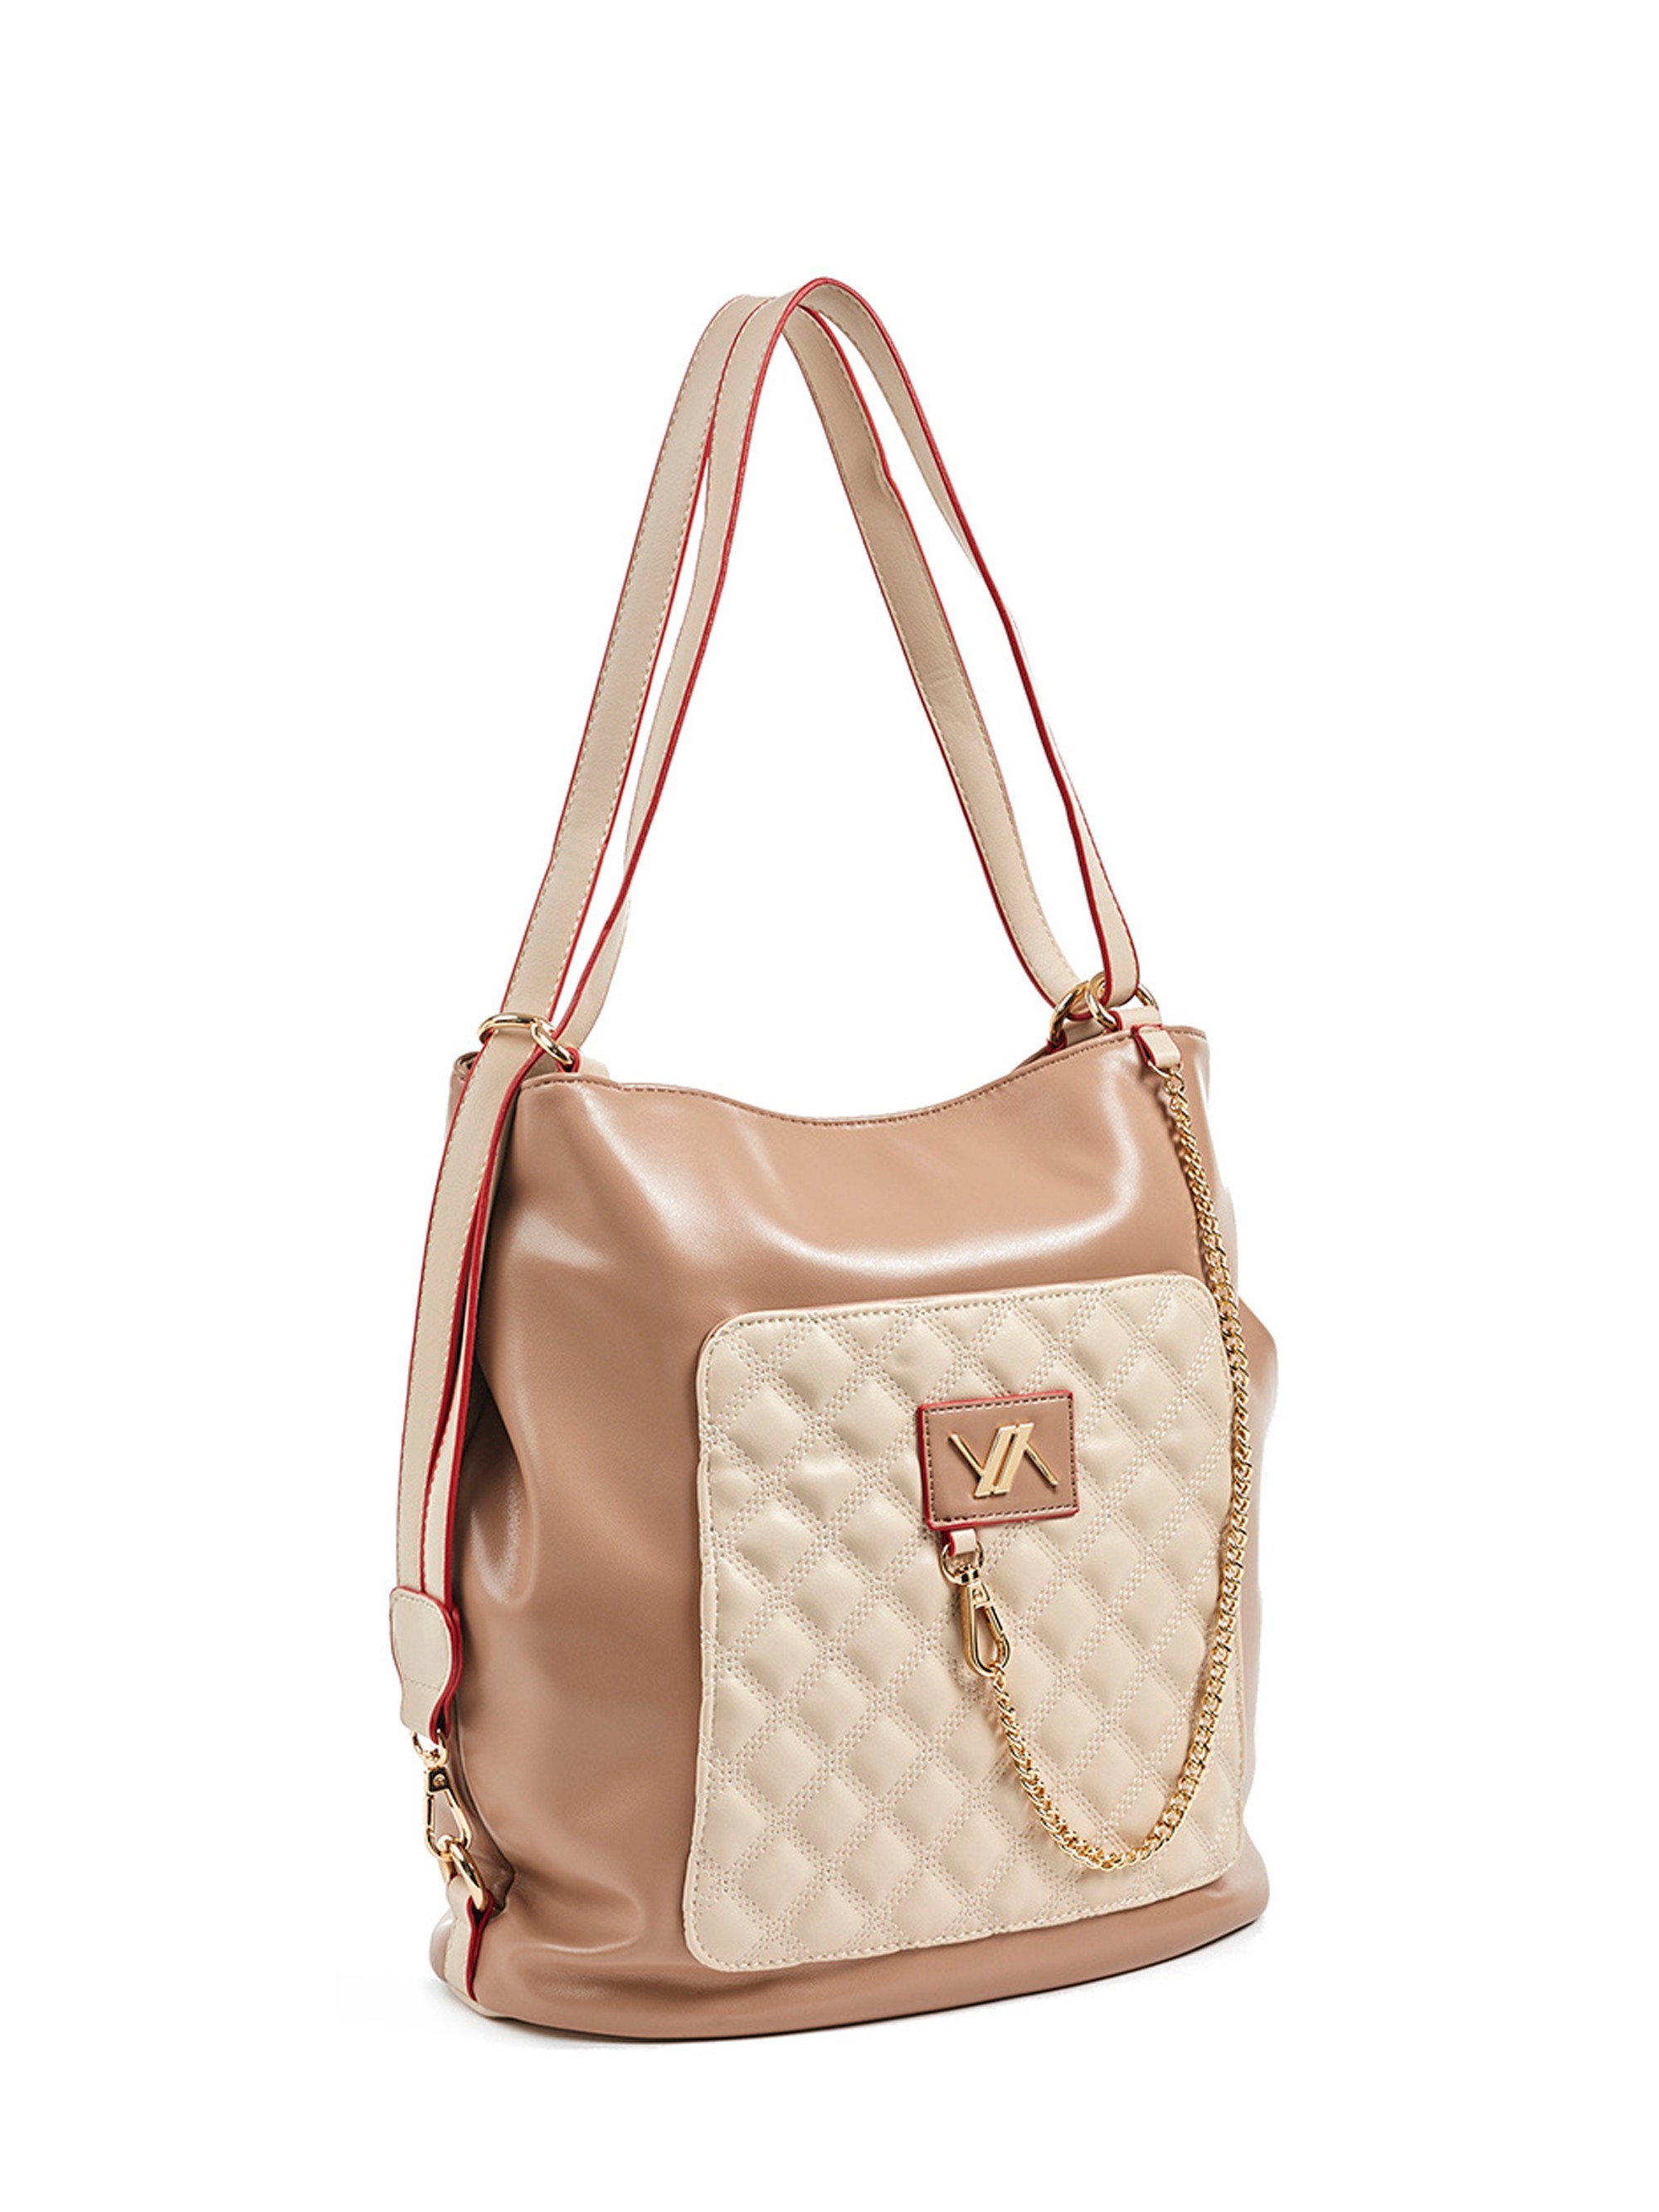 Сумка-рюкзак женская VERDE 6316ve-16, beige/taupe, сумка-рюкзак, бежевый, искусственная кожа  - купить